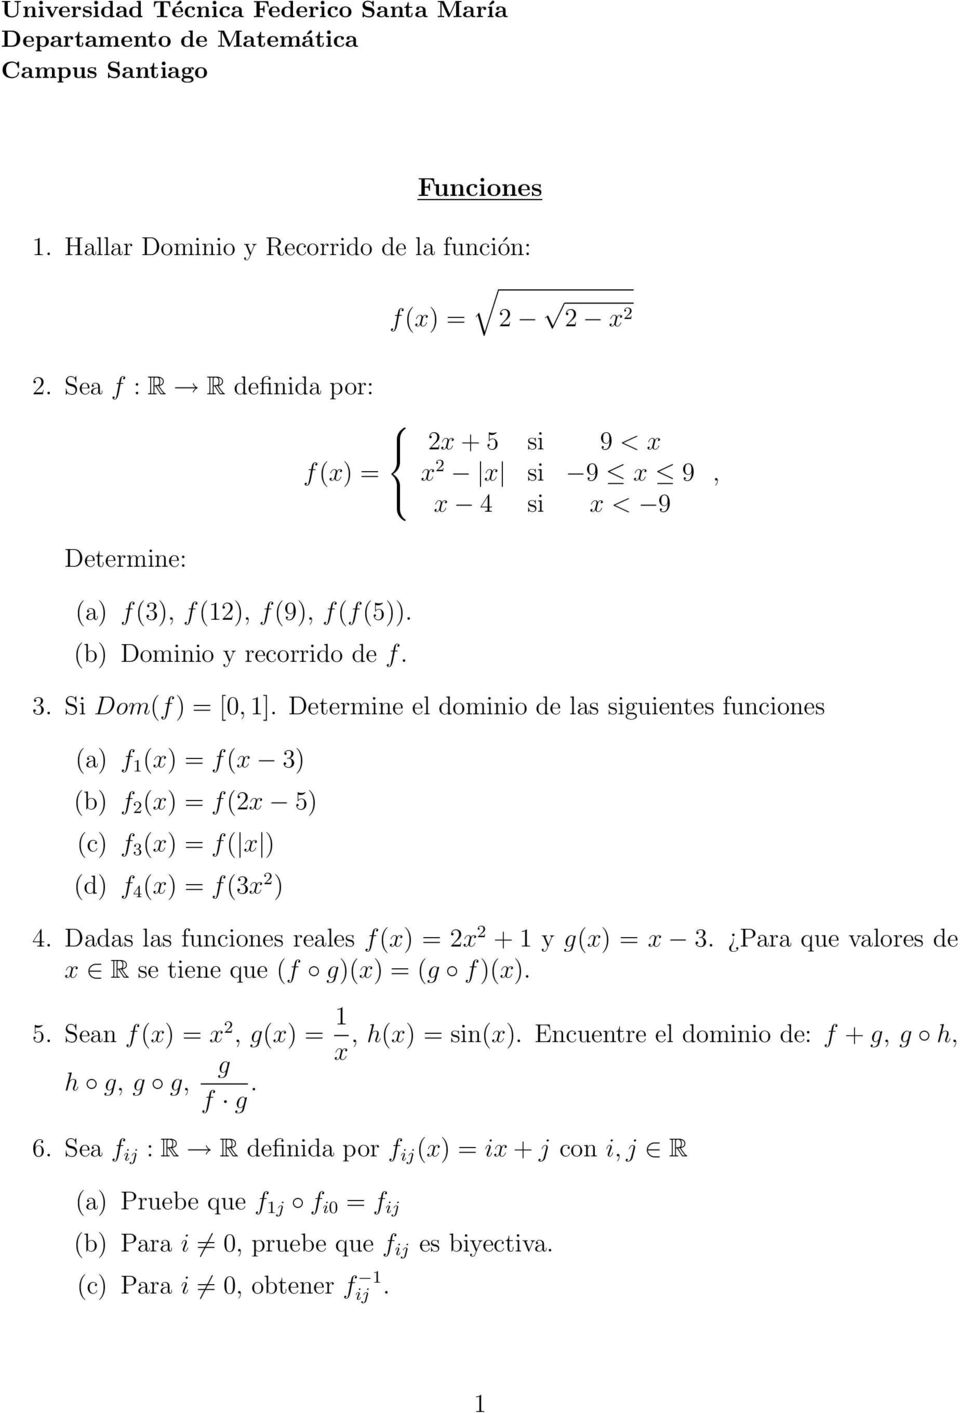 Determine el dominio de las siguientes funciones (a) f 1 (x) = f(x 3) (b) f (x) = f(x 5) (c) f 3 (x) = f( x ) (d) f 4 (x) = f(3x ) 4. Dadas las funciones reales x + 1 y g(x) = x 3.